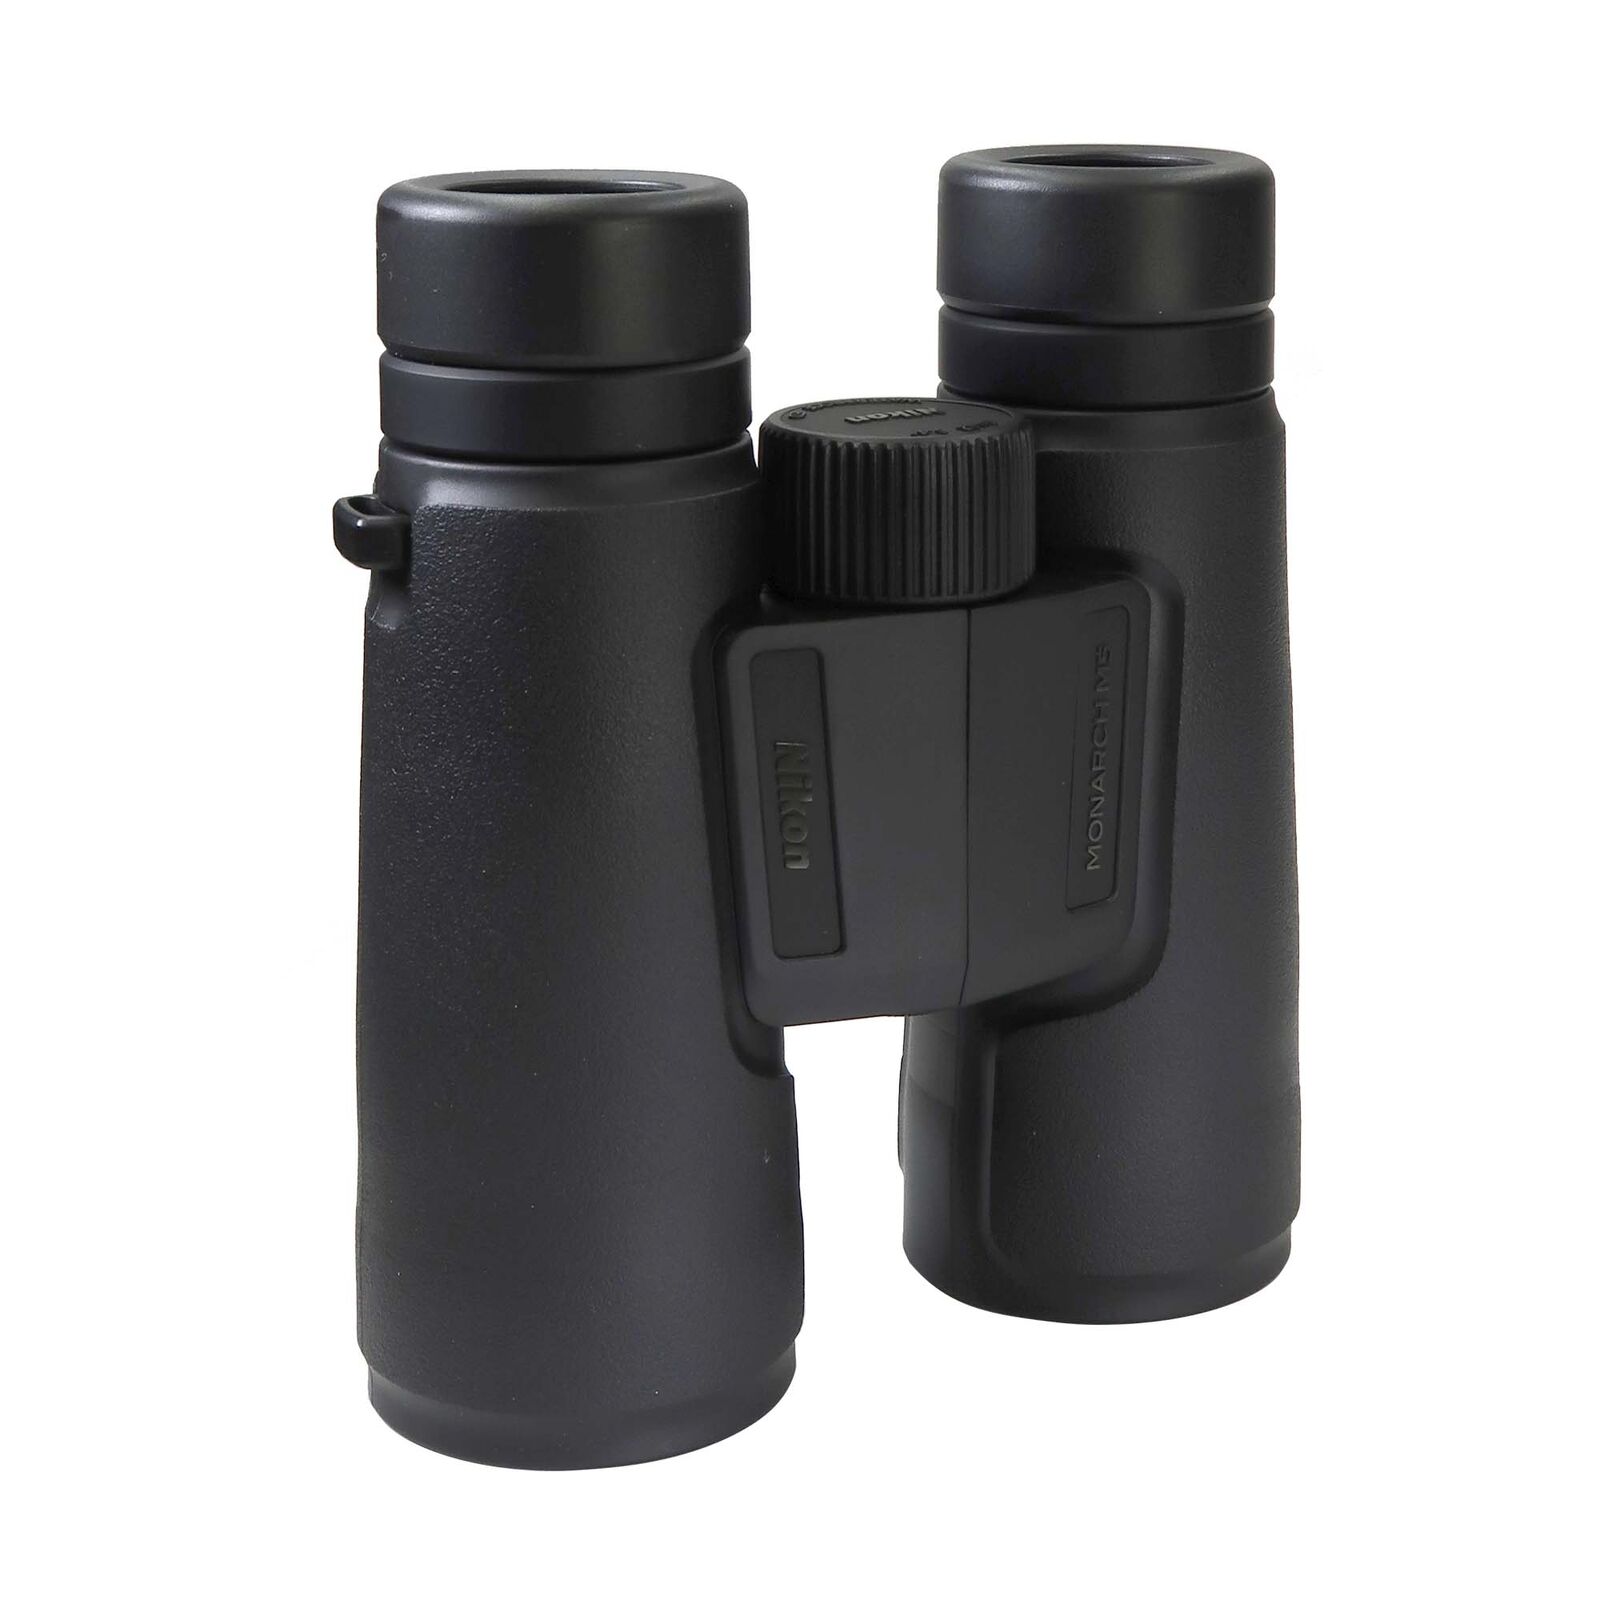 Nikon 8X42 Monarch M5 Waterproof Roof Prism Binoculars (Black)